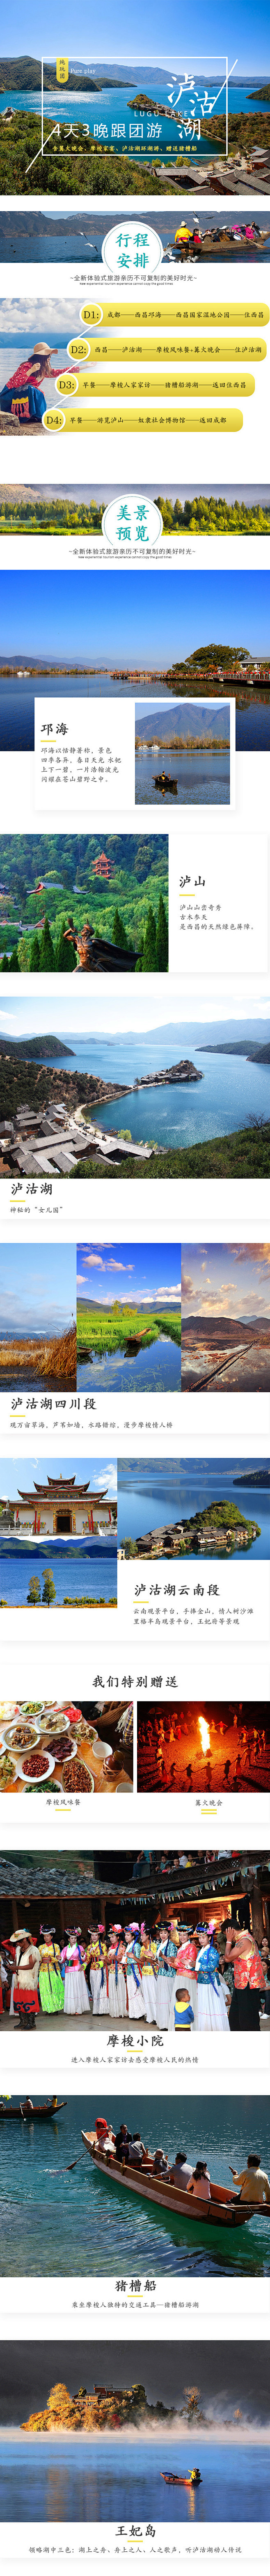 泸沽湖跟团游详情页